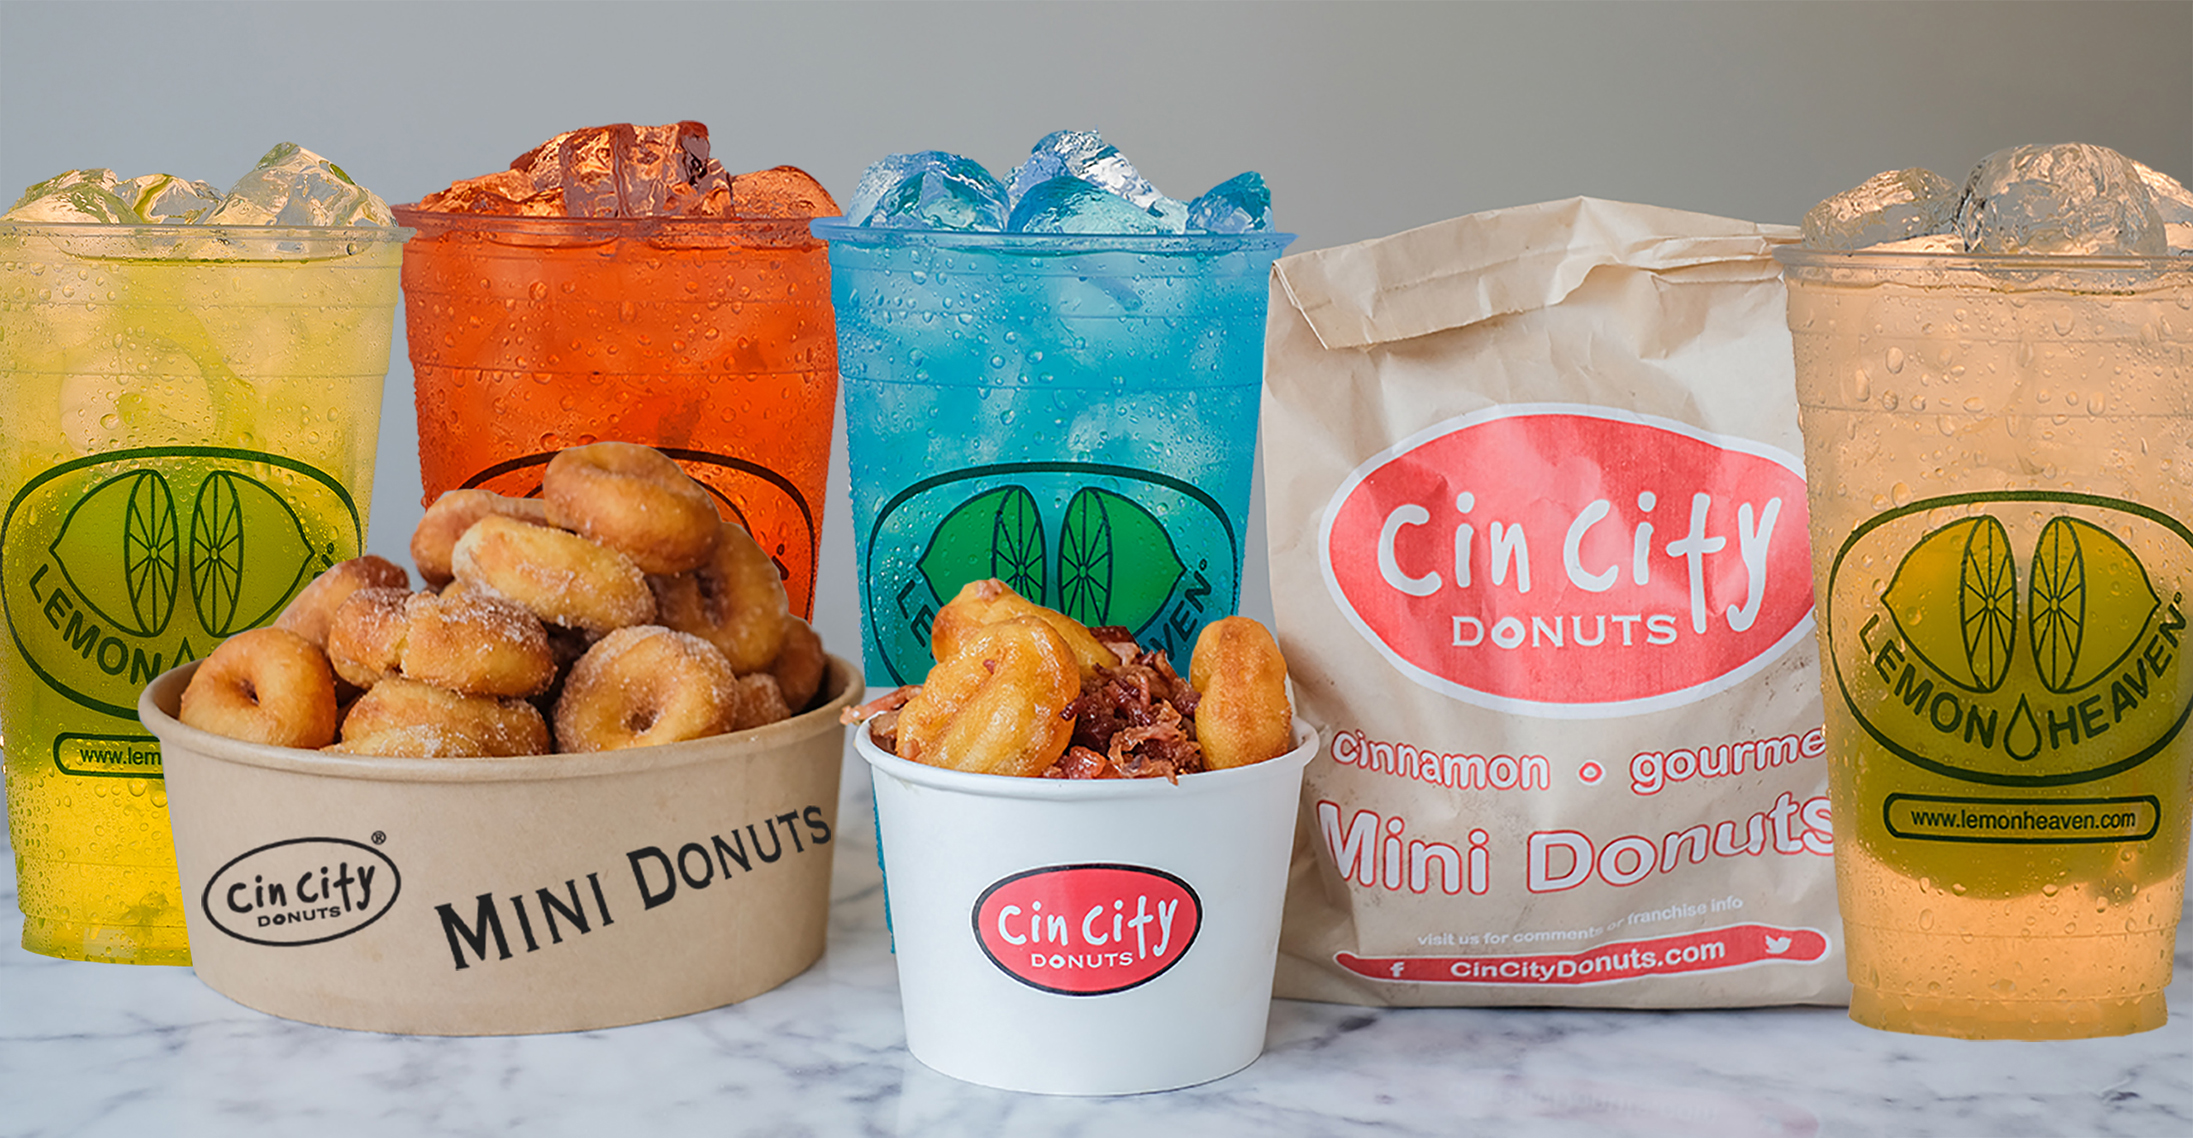 Lemon Heaven Lemonade and Cin City Mini Donuts